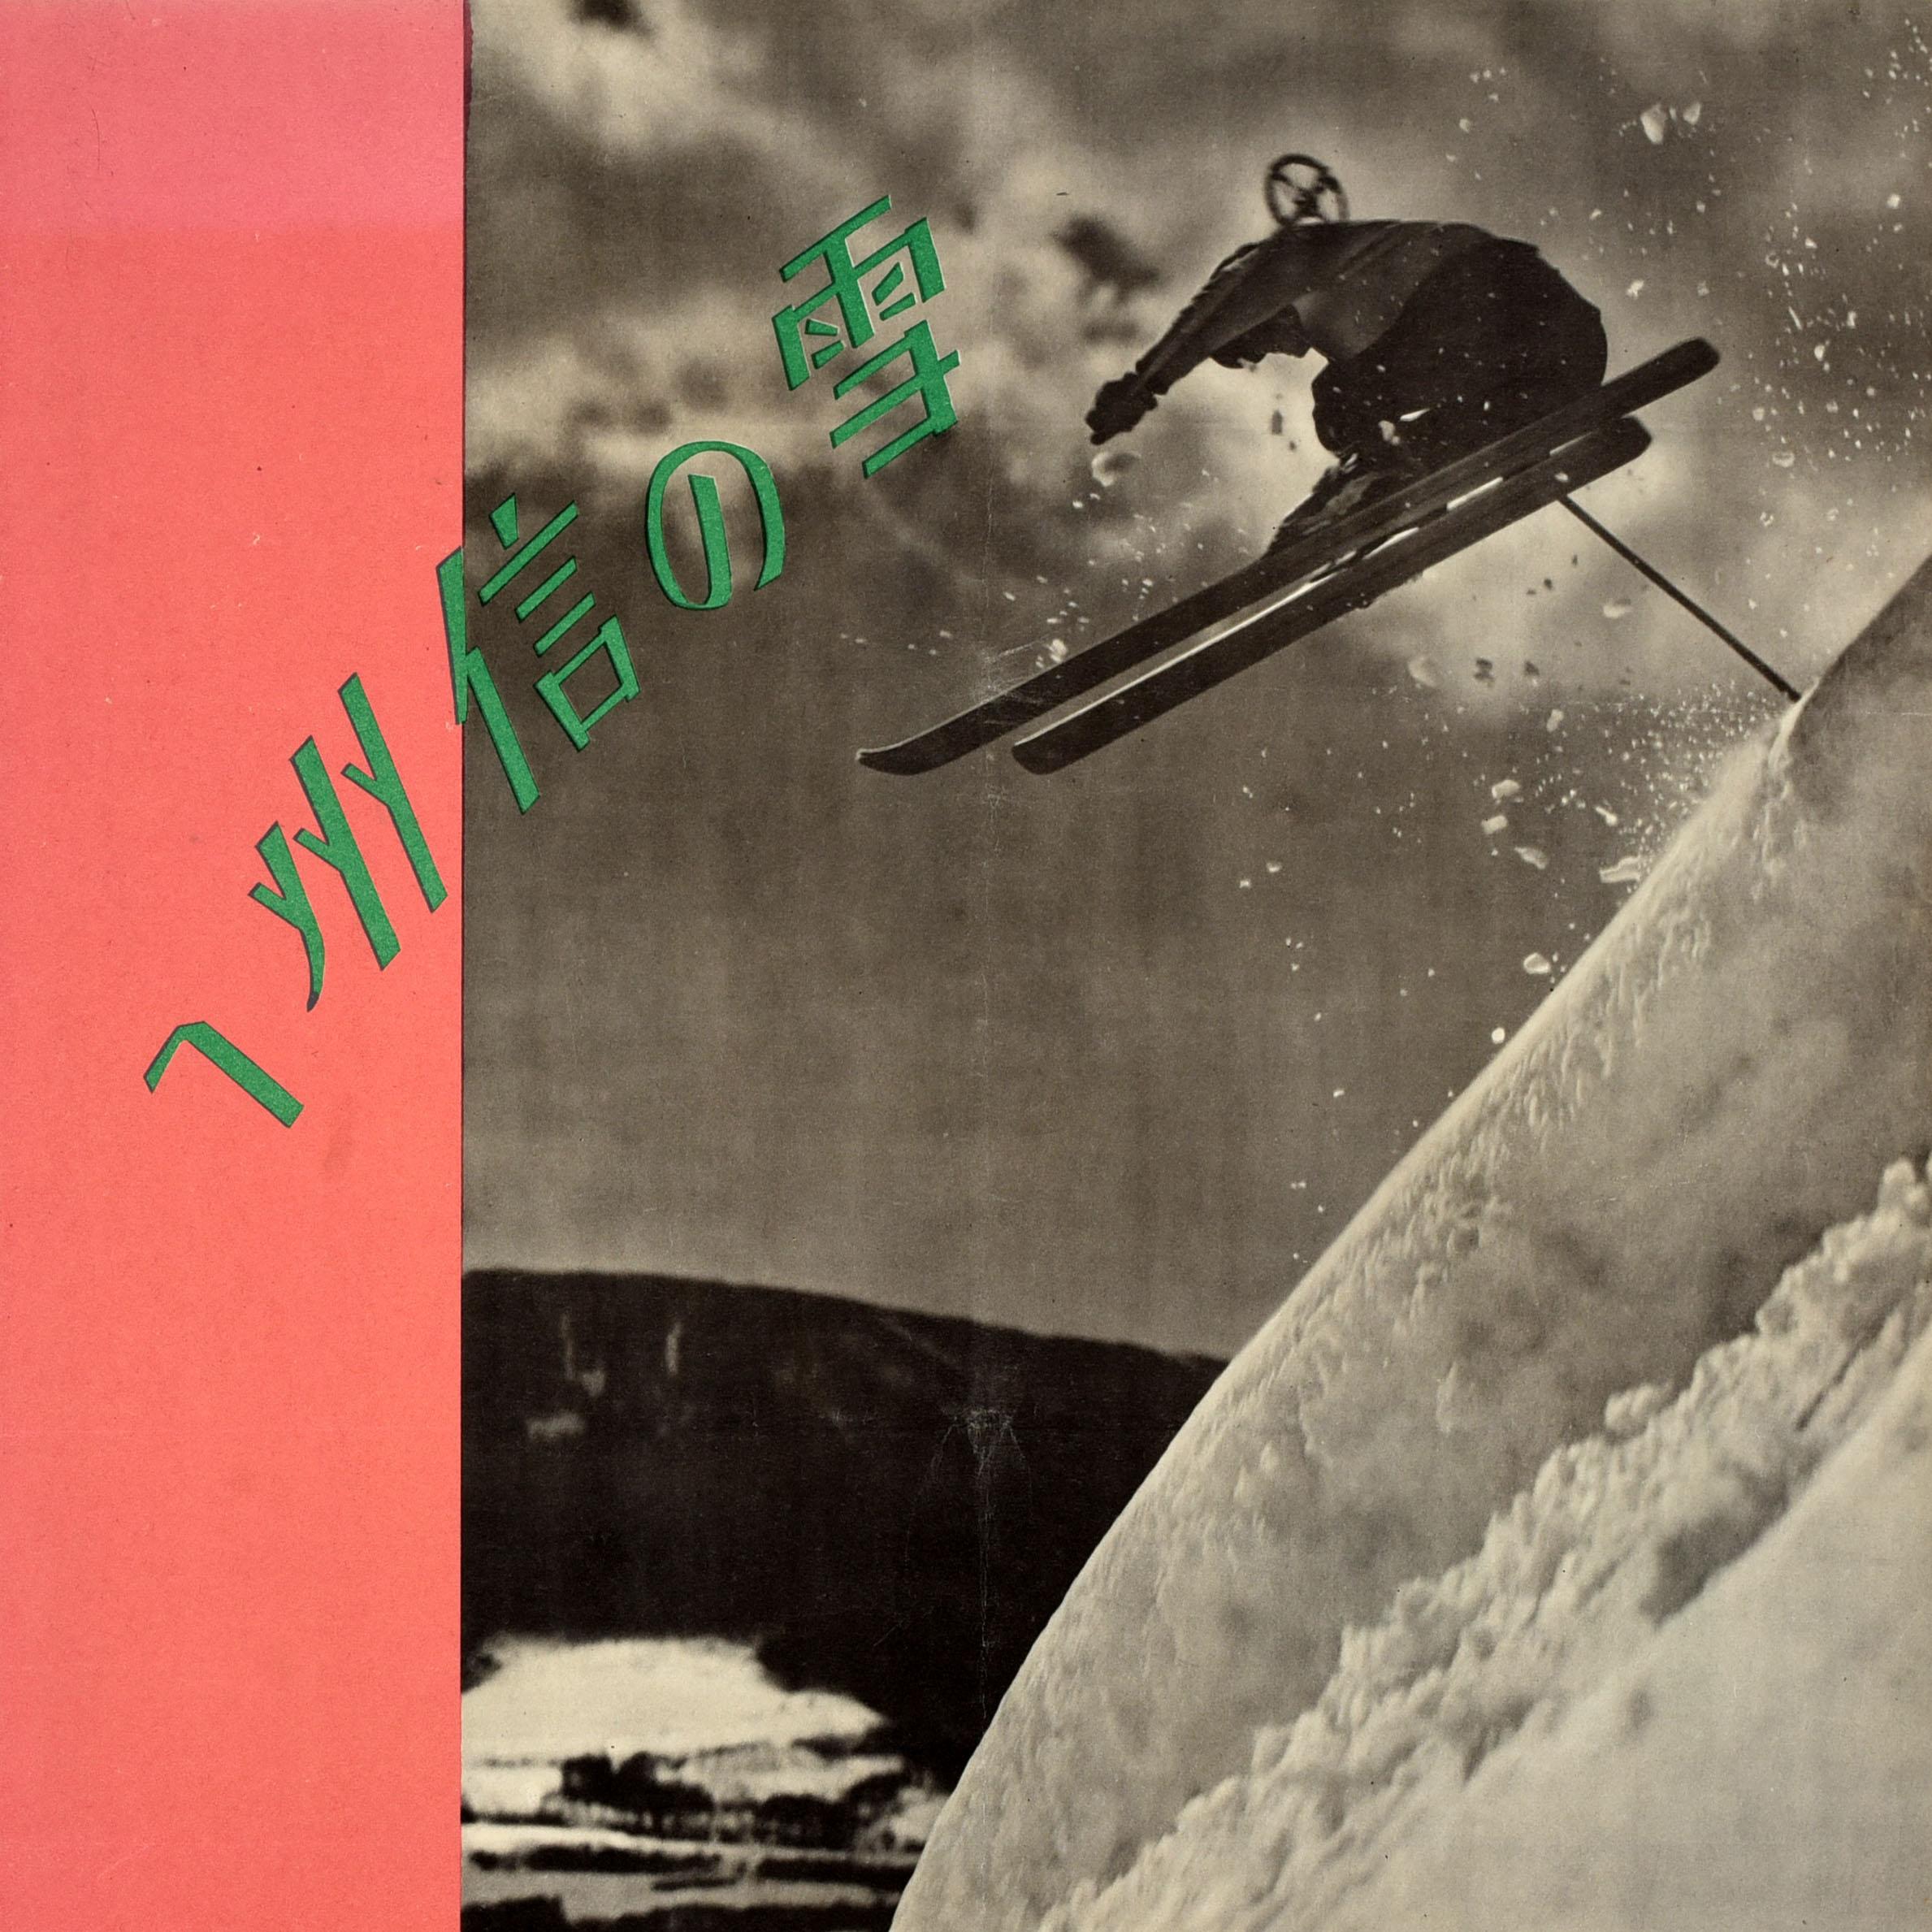 Affiche originale de voyage pour le ski et les sports d'hiver pour la station de ski de Shinsu / Shinano dans la préfecture de Nagano au Japon. Elle présente une photographie en noir et blanc d'un skieur sautant d'une pente enneigée avec le texte